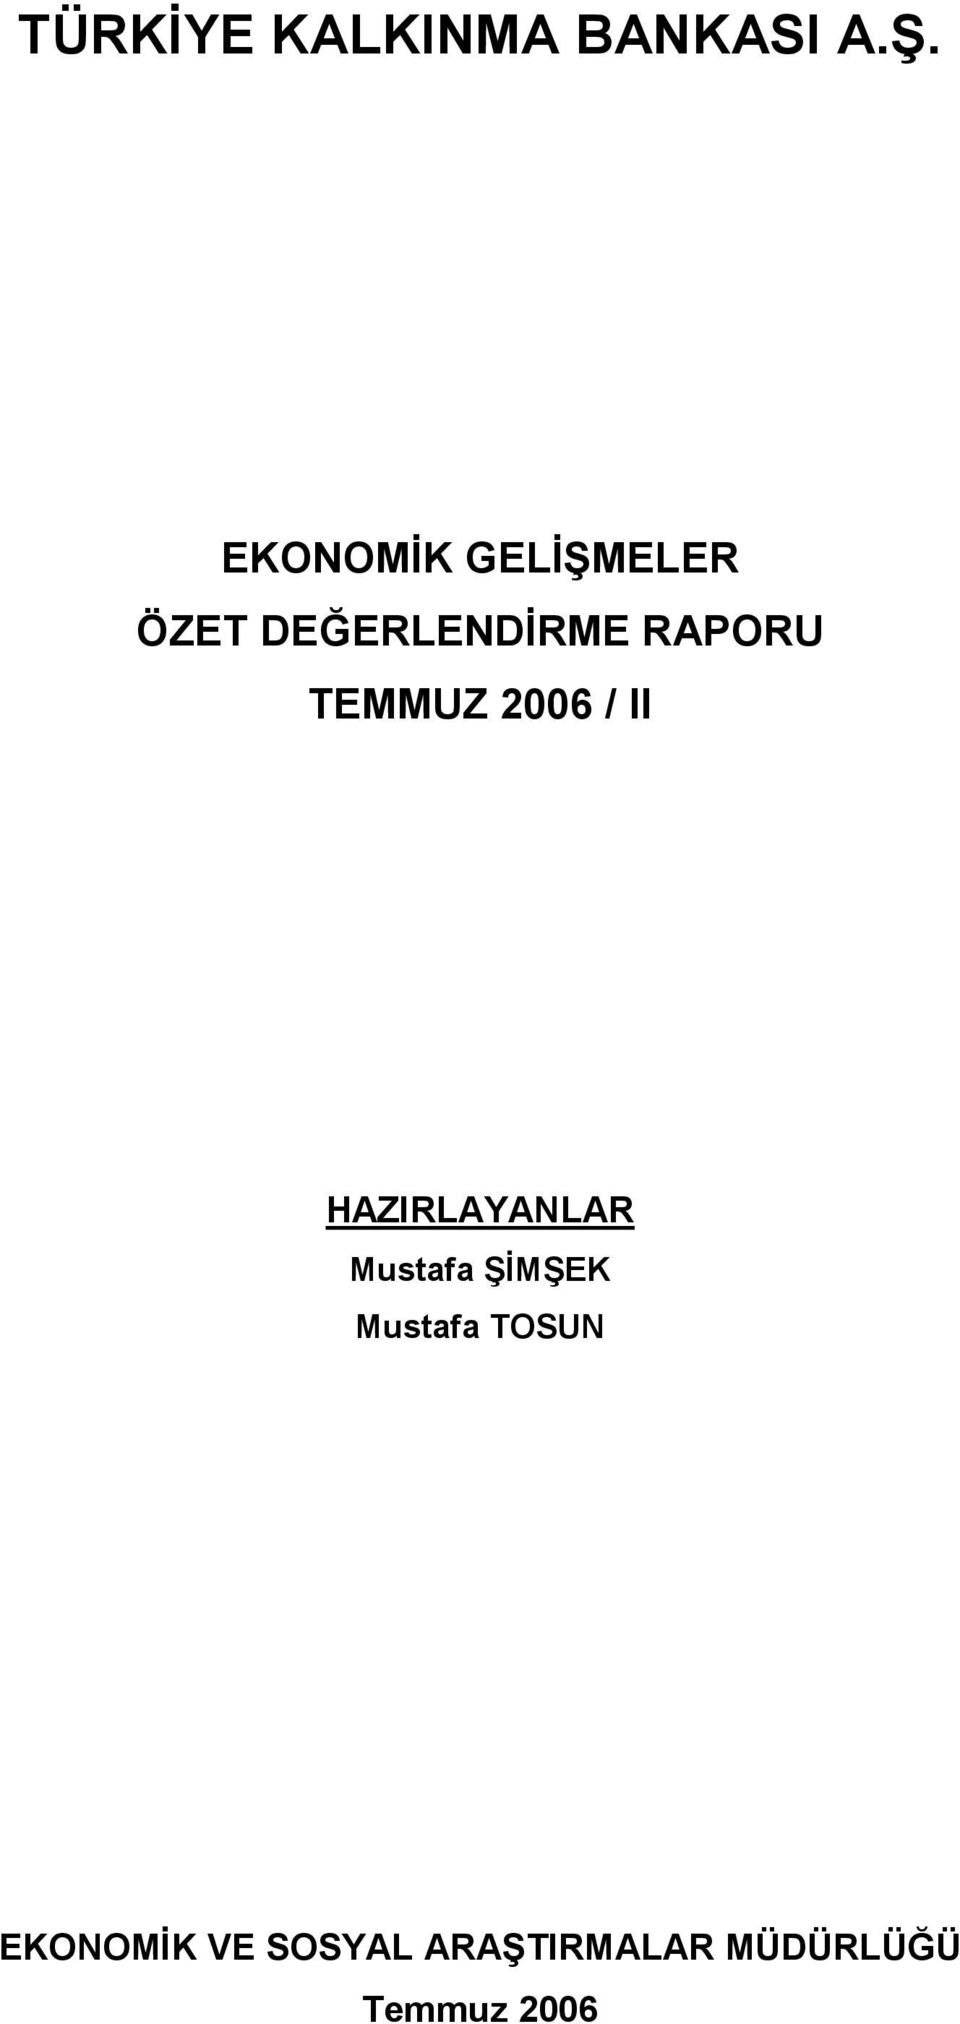 TEMMUZ 2006 / II HAZIRLAYANLAR Mustafa ŞİMŞEK